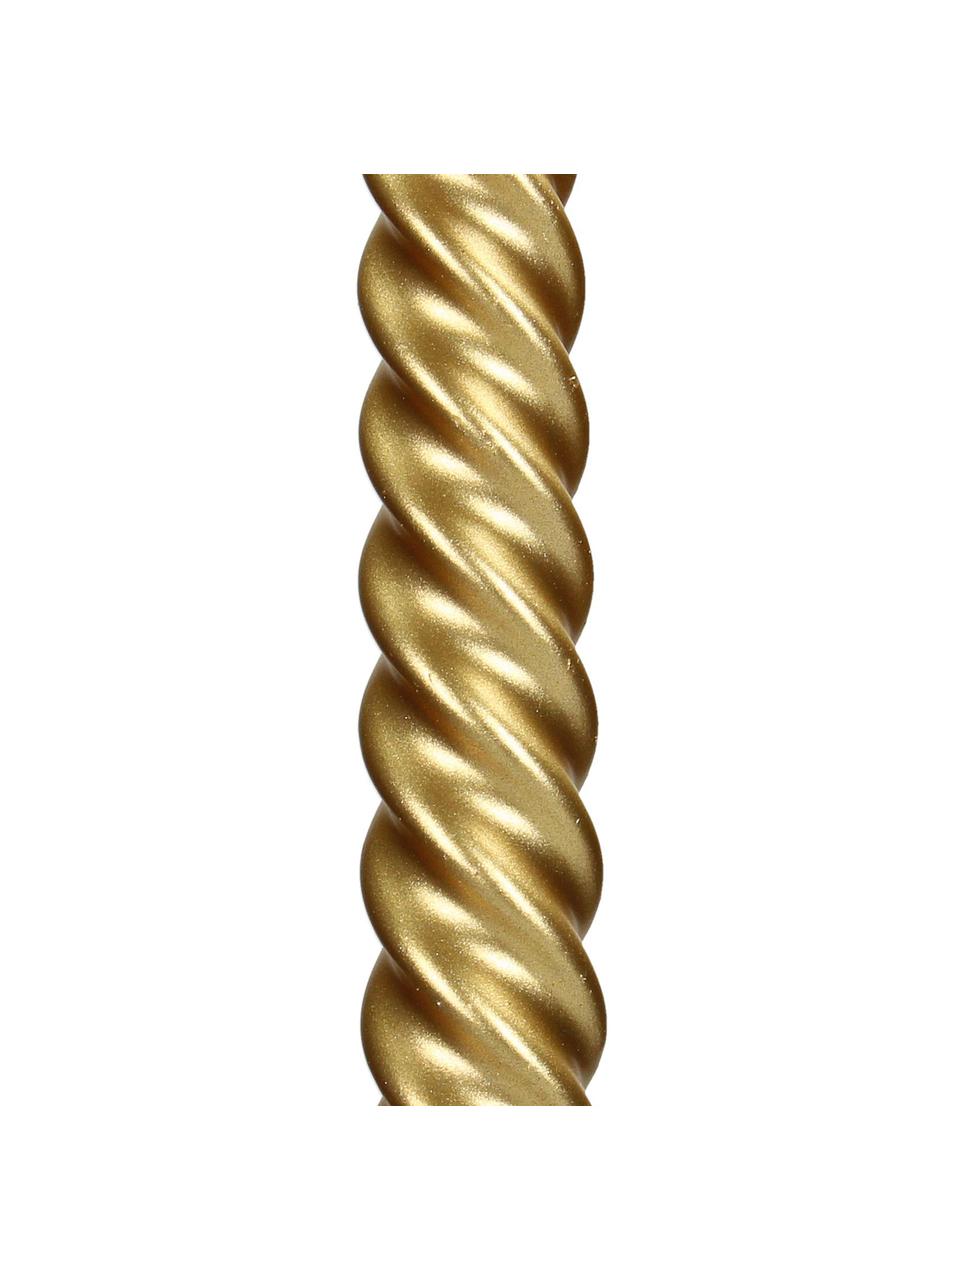 Stabkerzen Twisted, 4 Stück, Wachs, Goldfarben, L 26 cm